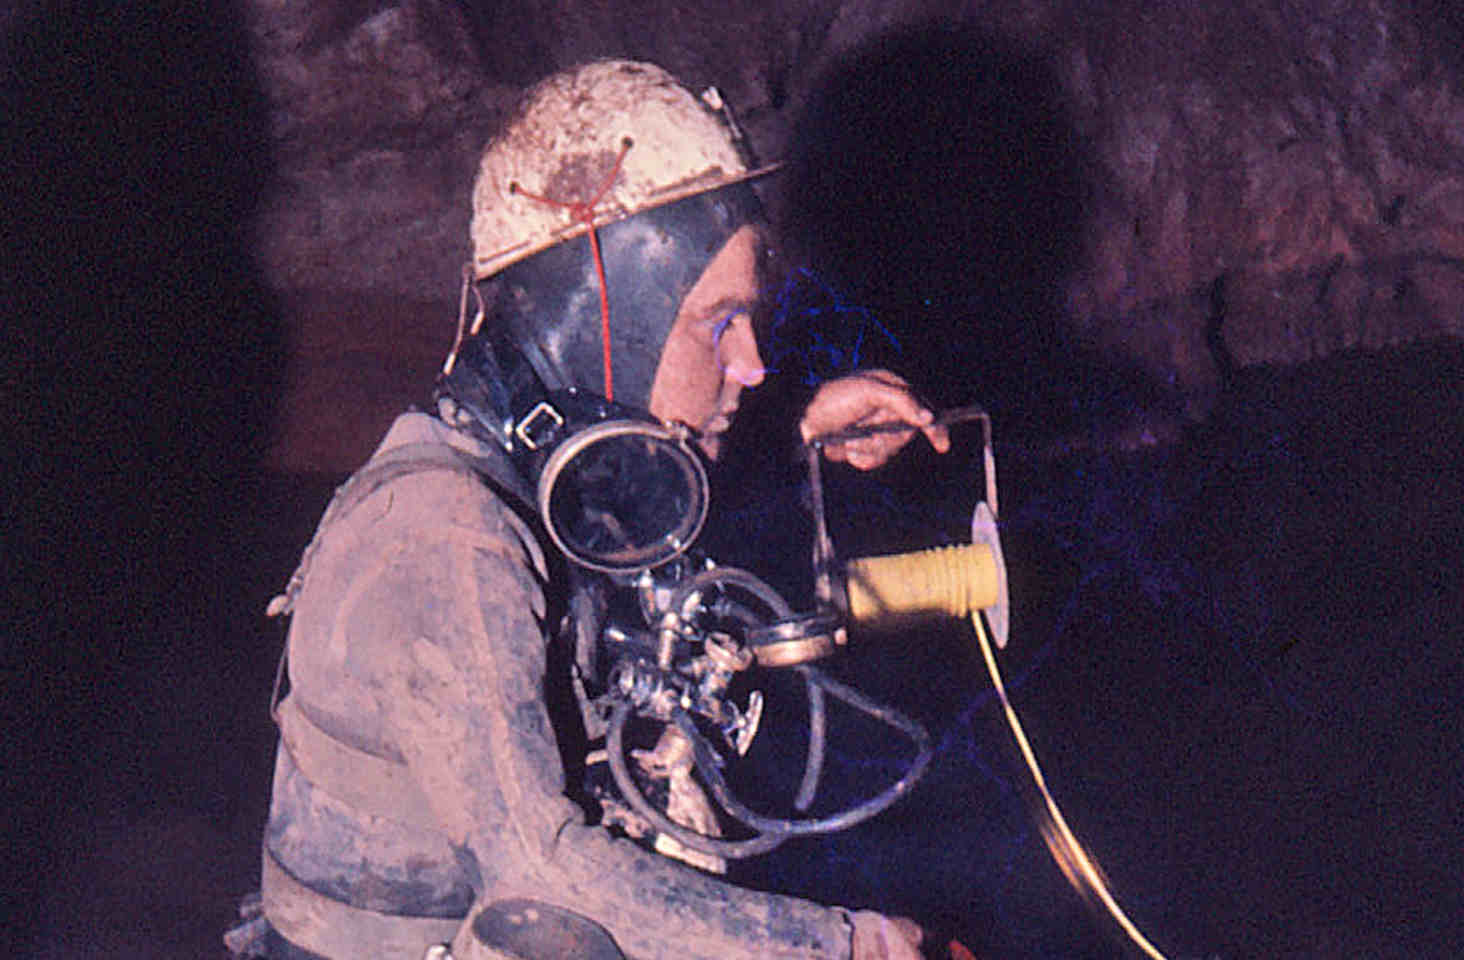 John Ogden diving in The Chikker Cave in Morocco